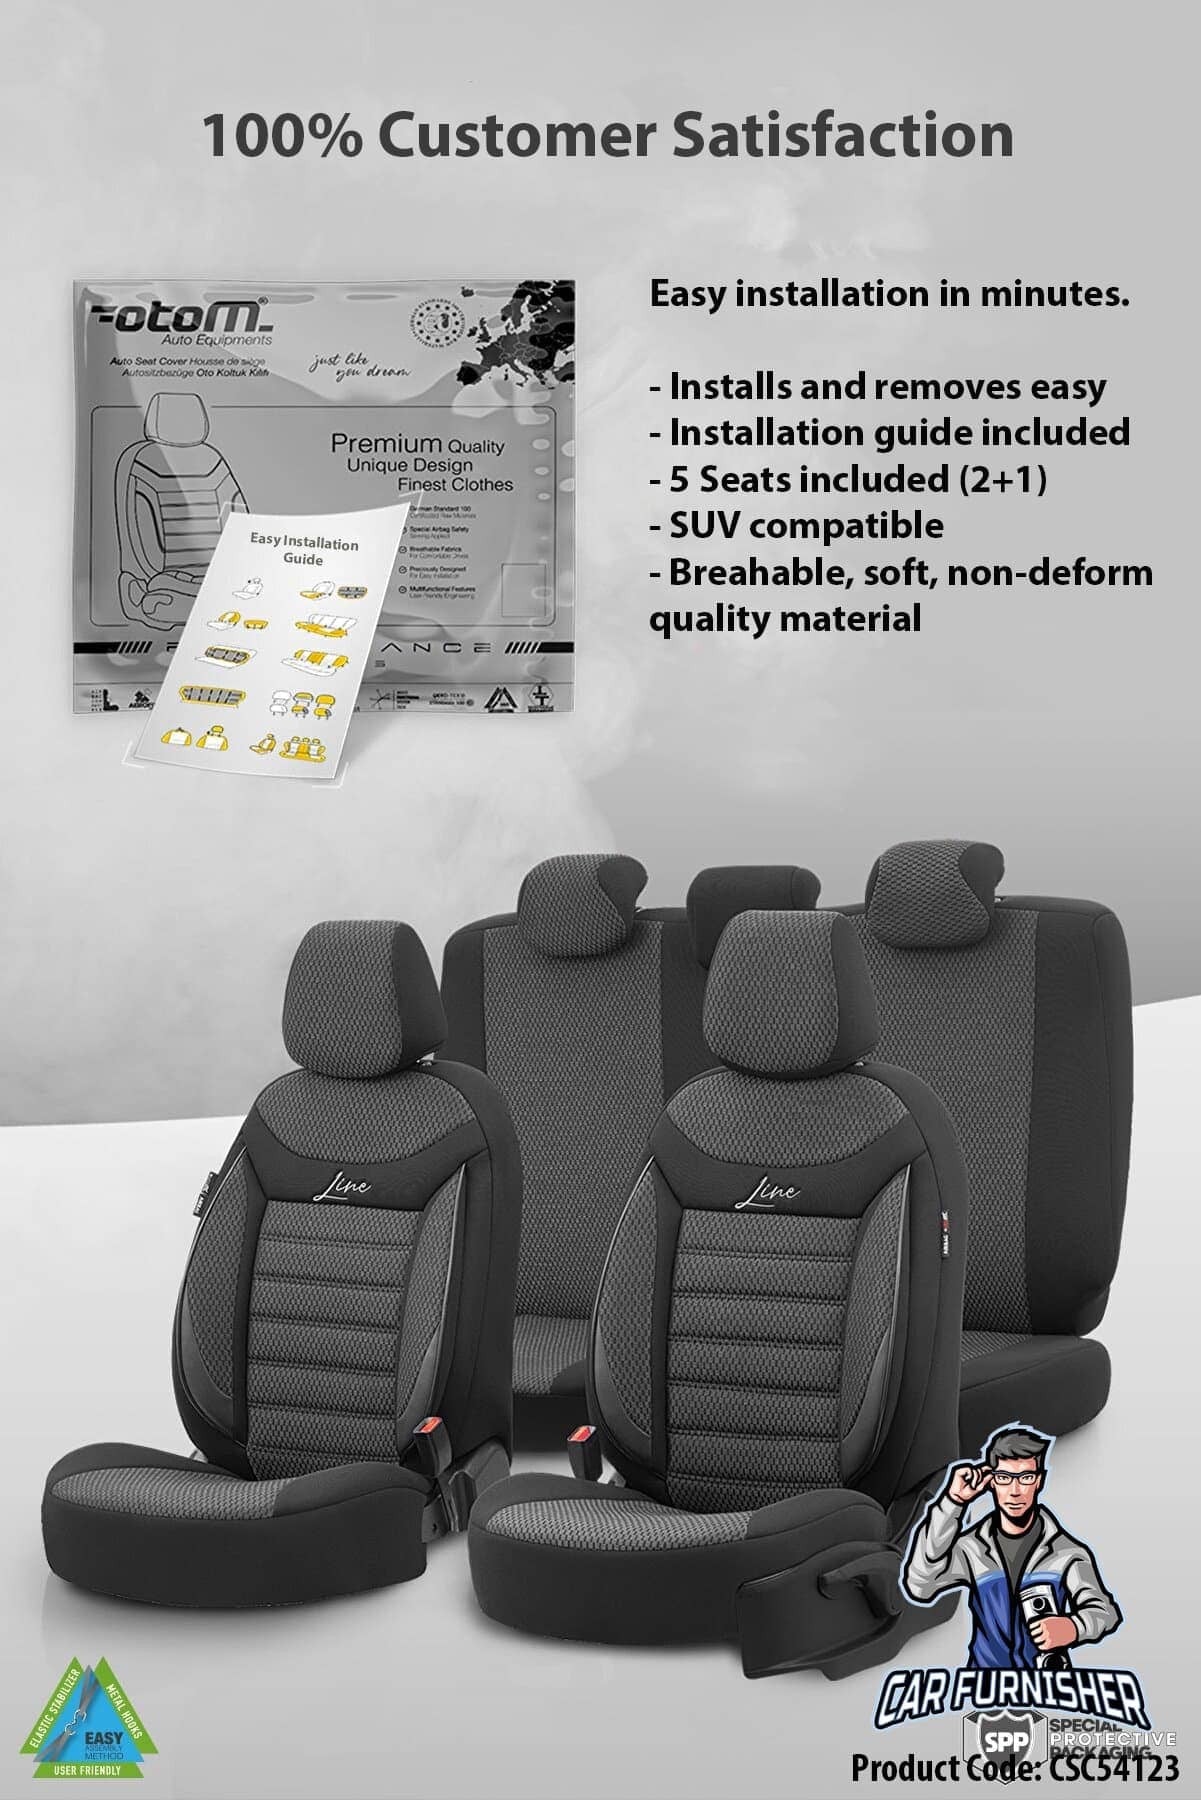 HOT NFL Detroit Lions Louis Vuitton 3D Car Seat Cover - Express your unique  style with BoxBoxShirt